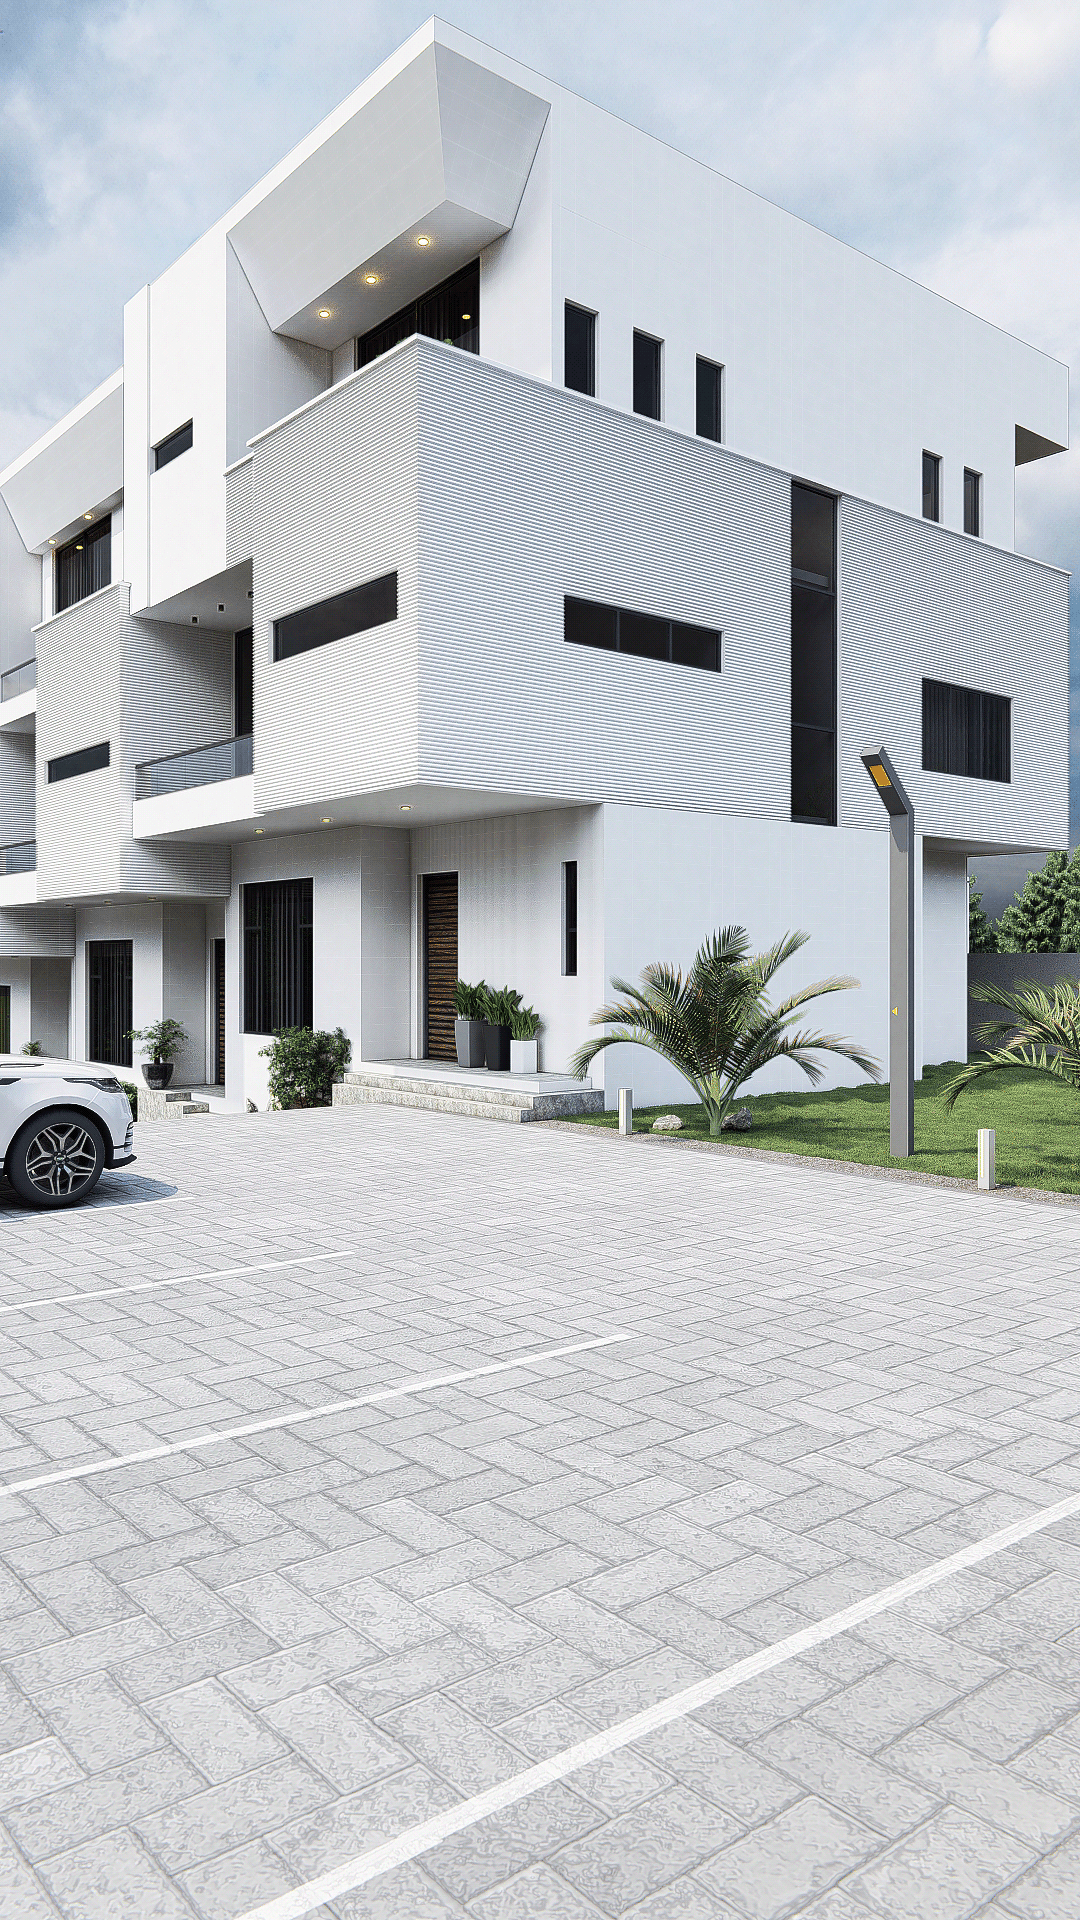 residential architecture ArcViz Render visualization 3D modern minimalist